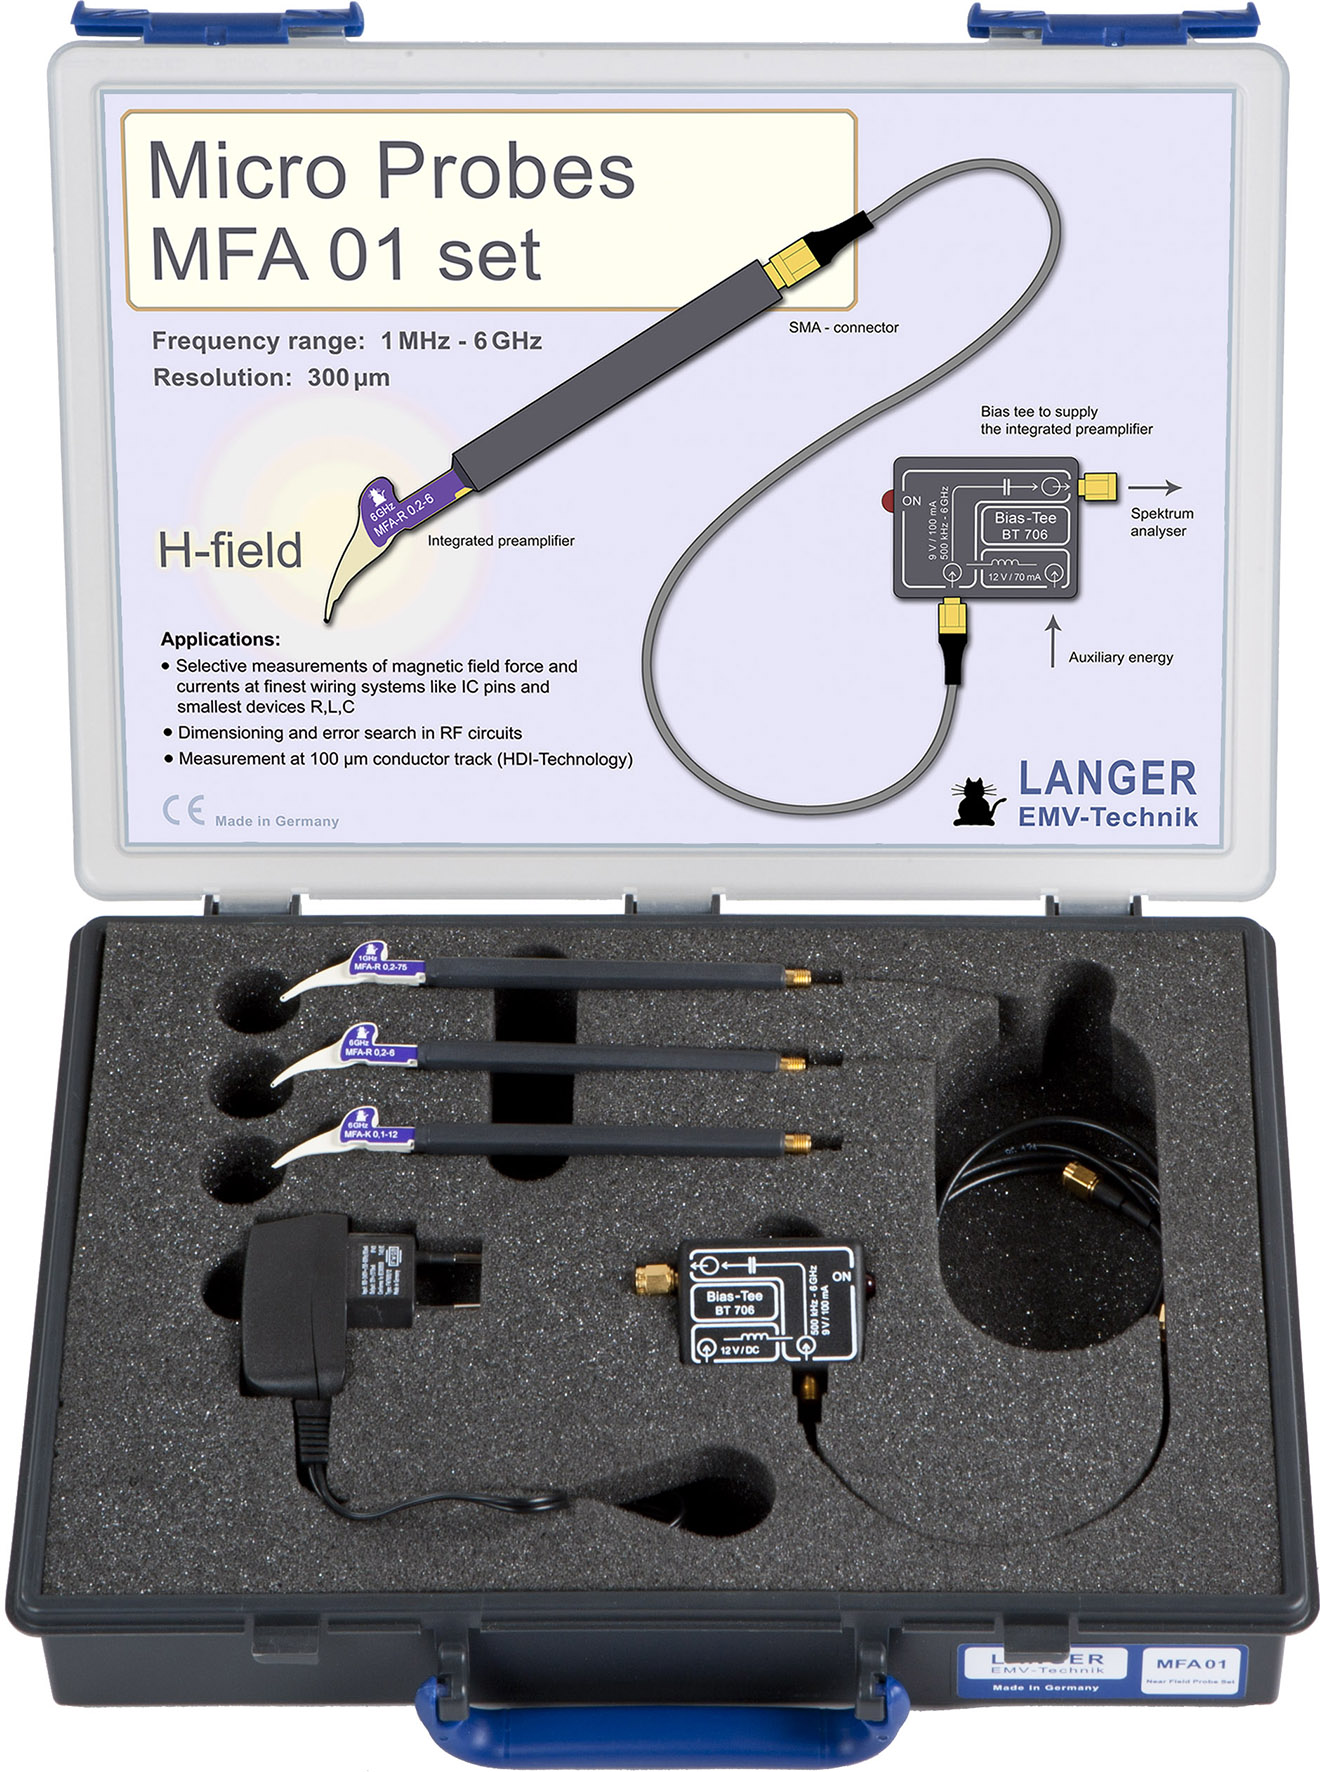 MFA 01 set, Mikrosonden 1 MHz bis 6 GHz